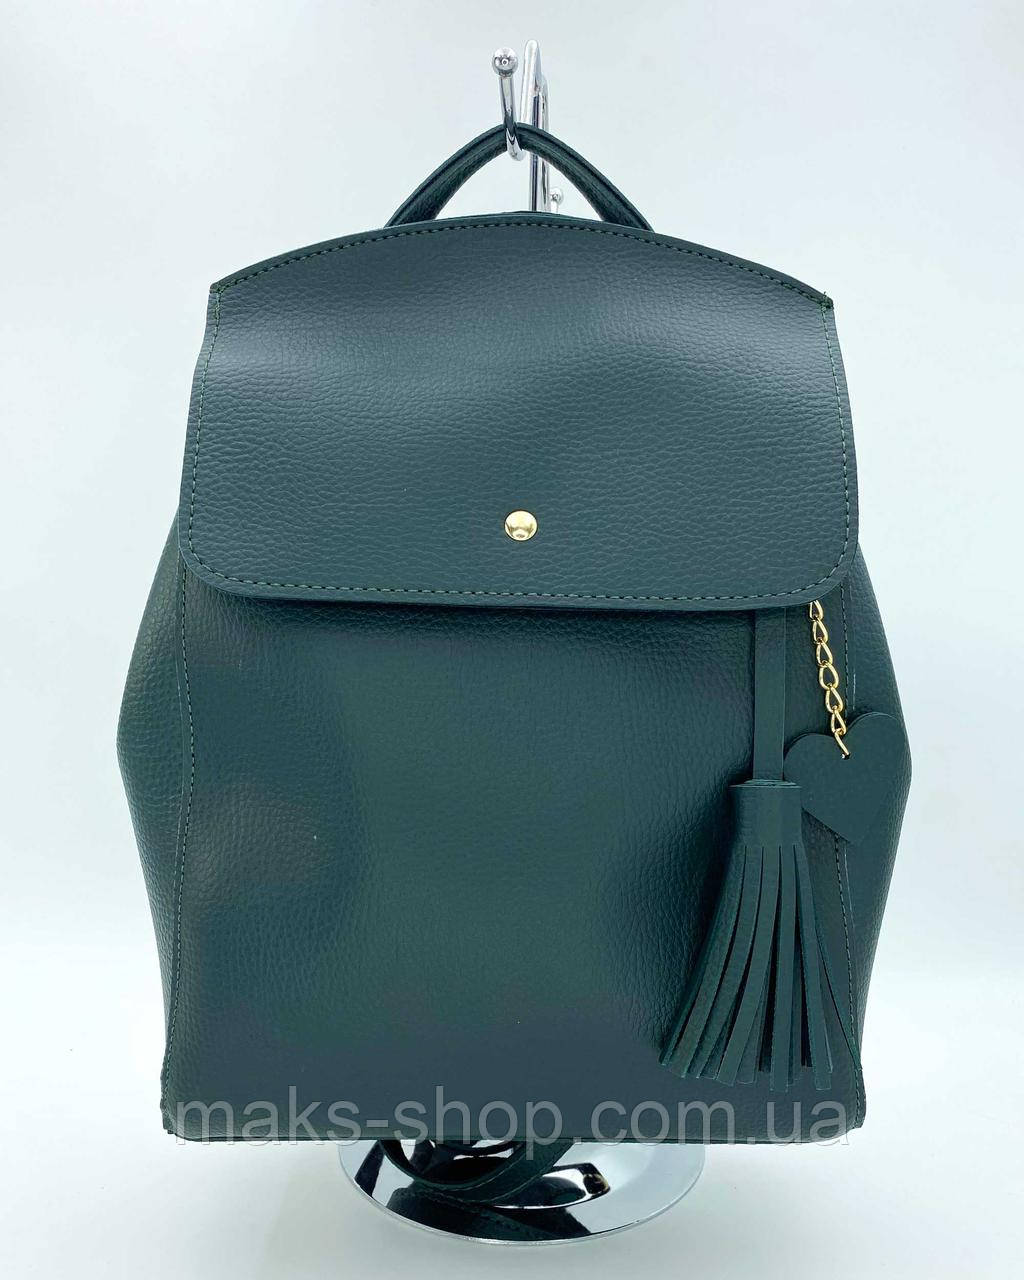 Жіночий міський рюкзак сумка 2 в 1,рюкзак із китицями, сумка-рюкзак жіночий модний стильний трансформер